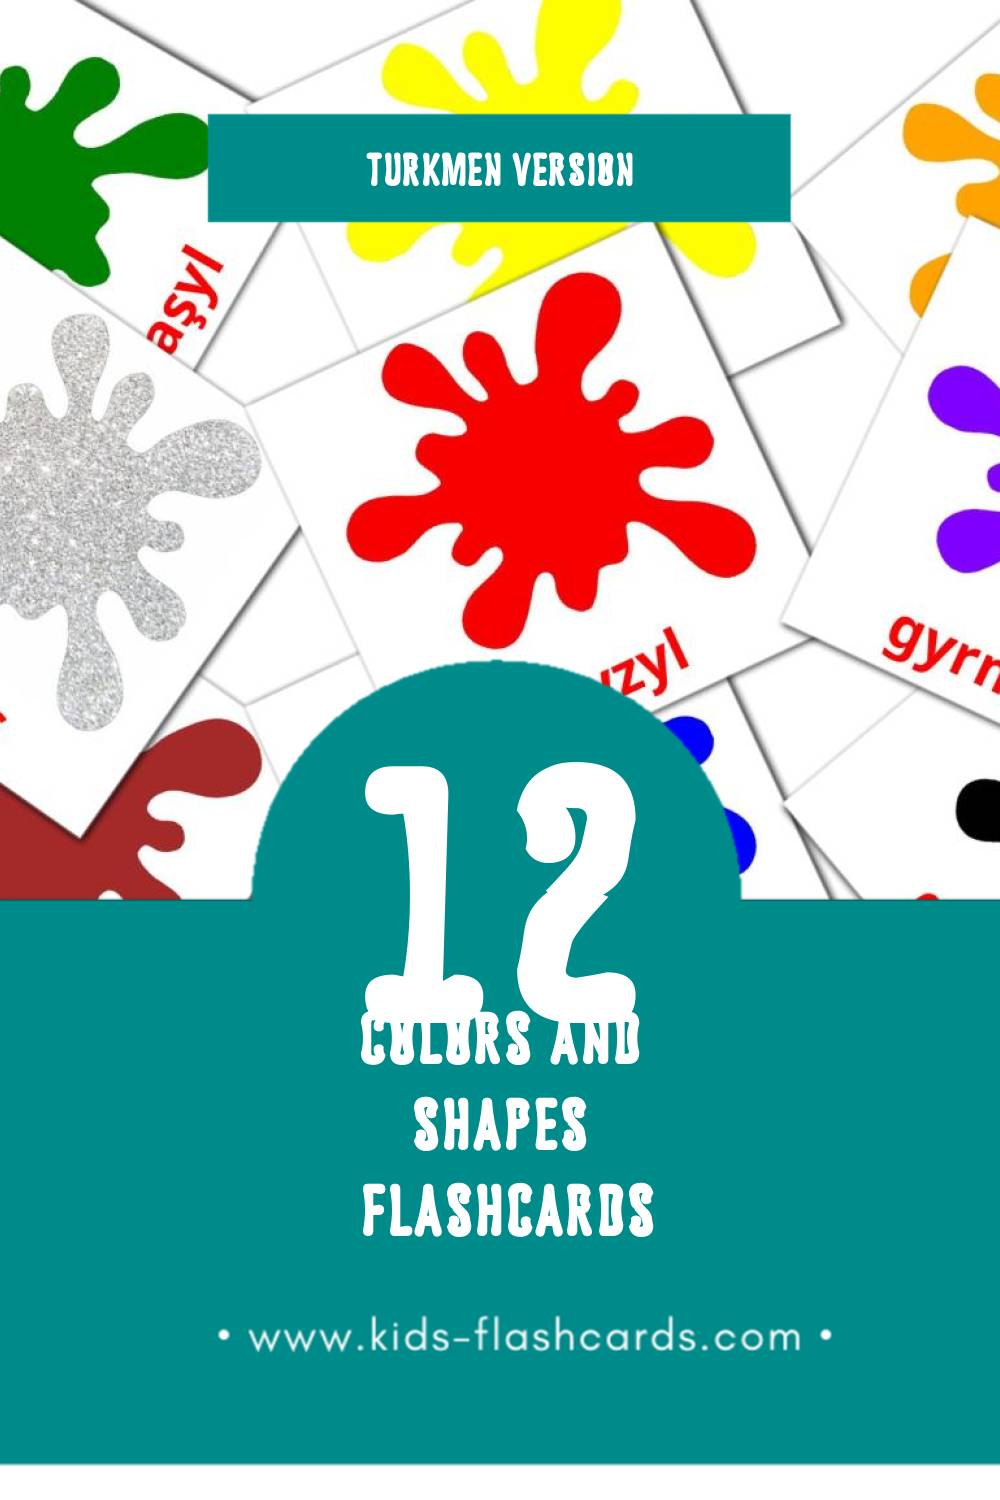 Visual Reňkler we şekiller Flashcards for Toddlers (12 cards in Turkmen)